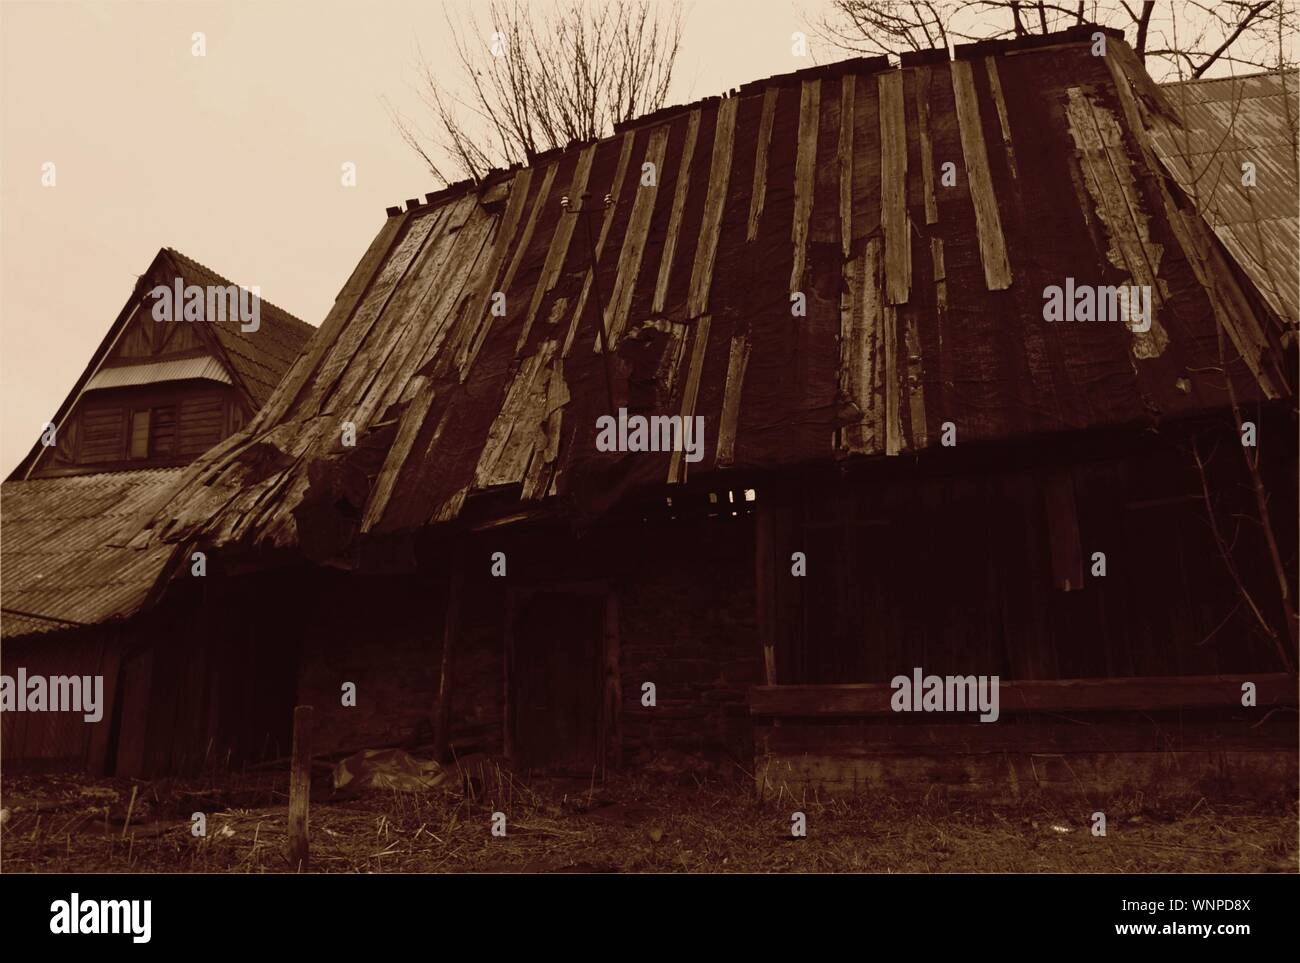 La Pologne, ZAKOPANE : cabane en bois historique dans les montagnes Tatry, Chocholow Banque D'Images